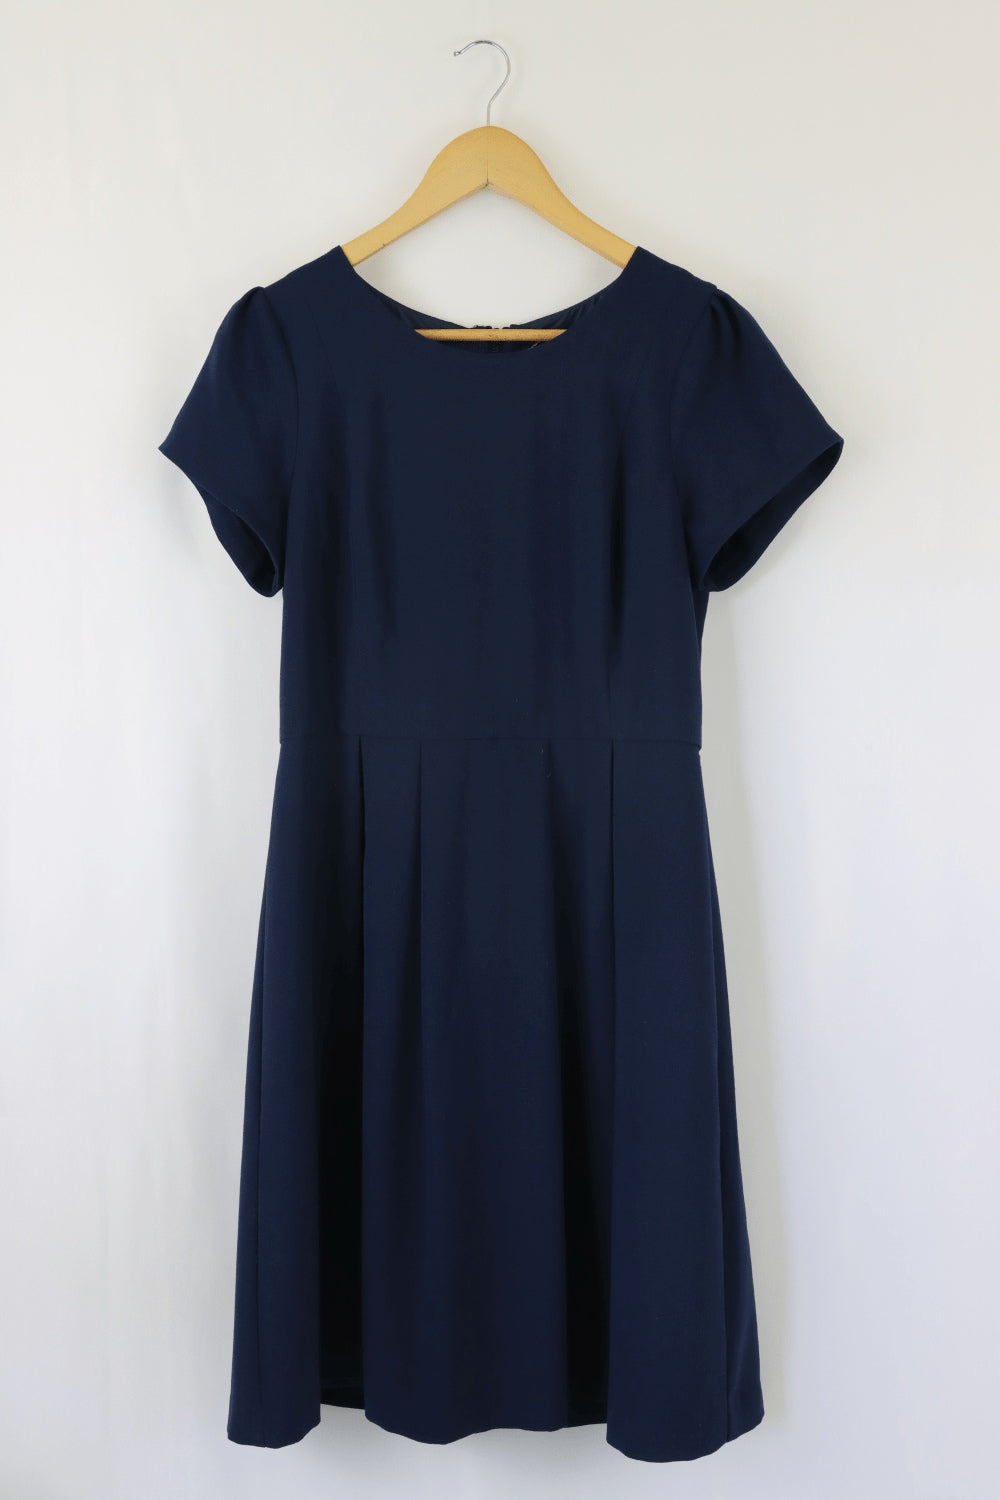 Jacqui E Blue Dress 12